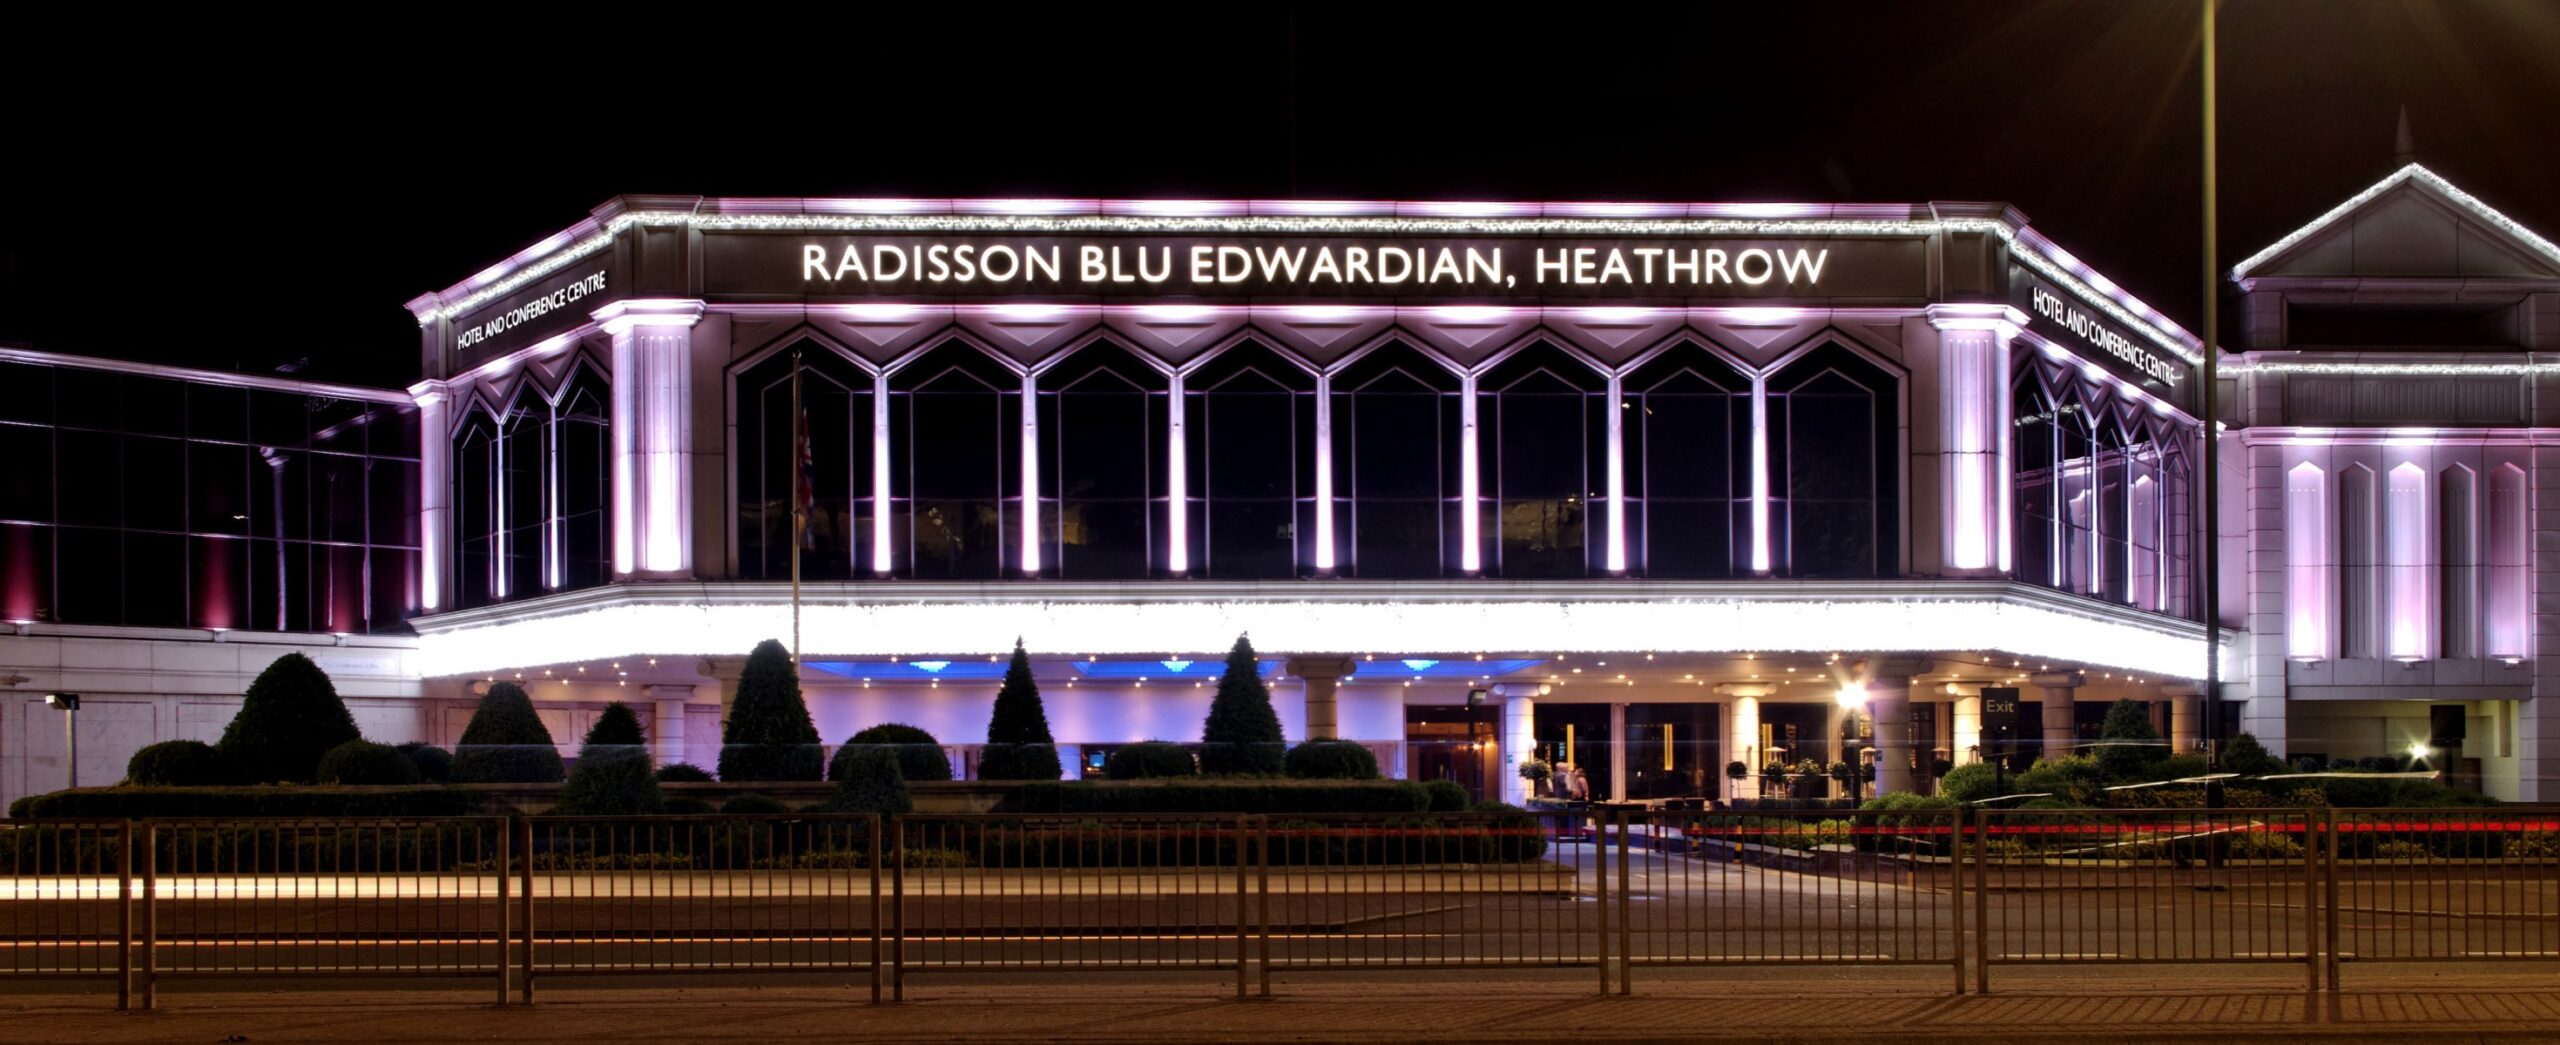 Radisson Blu Edwardian Heathrow Hotel